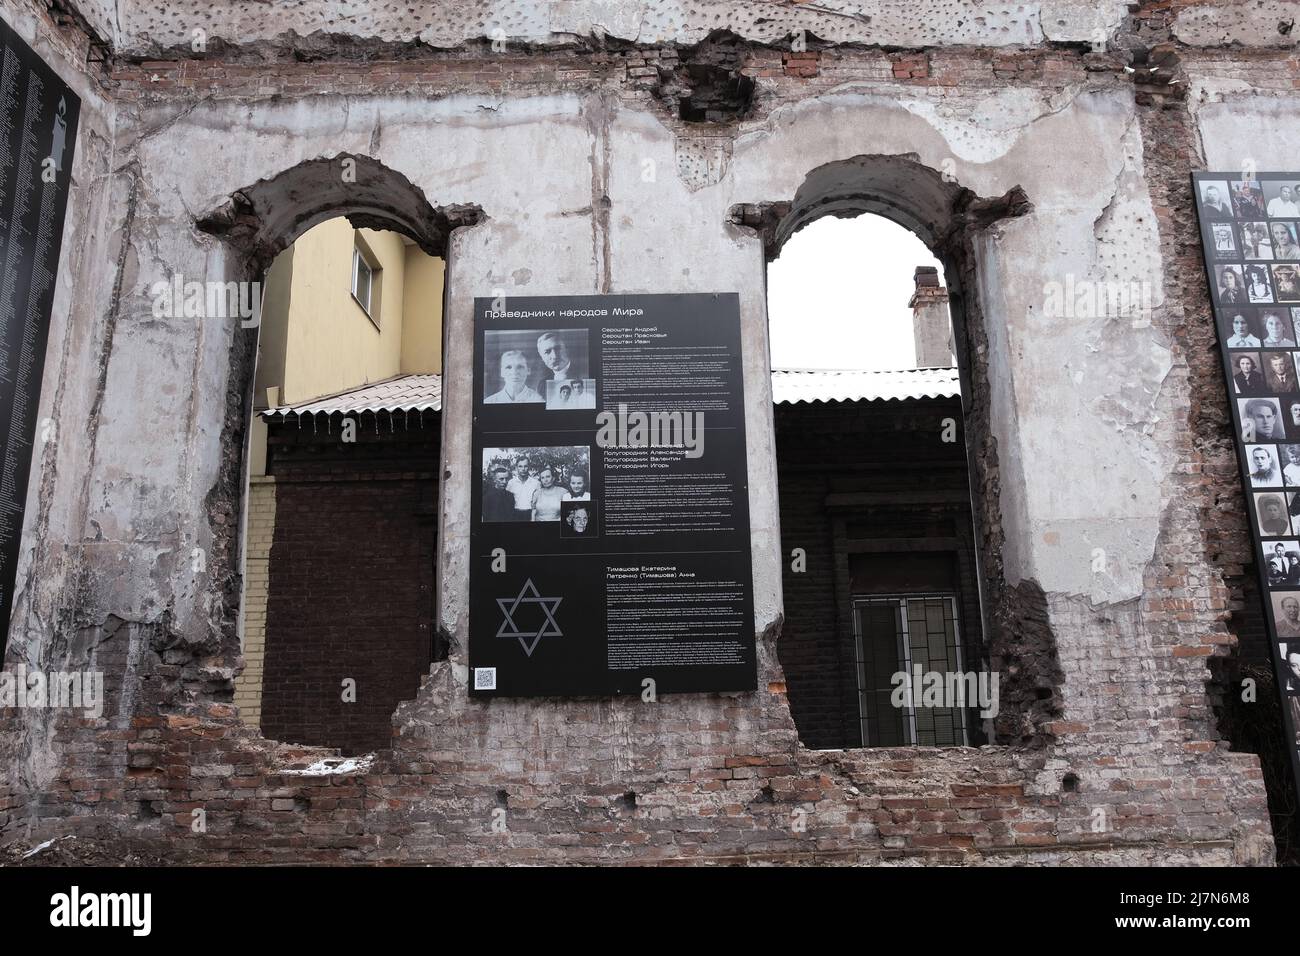 MARIOUPOL, UKRAINE - Mars. 5, 2022: Guerre de Russie contre l'Ukraine Mémorial en synagogue judaïsme endommagé par l'artillerie ennemie Banque D'Images